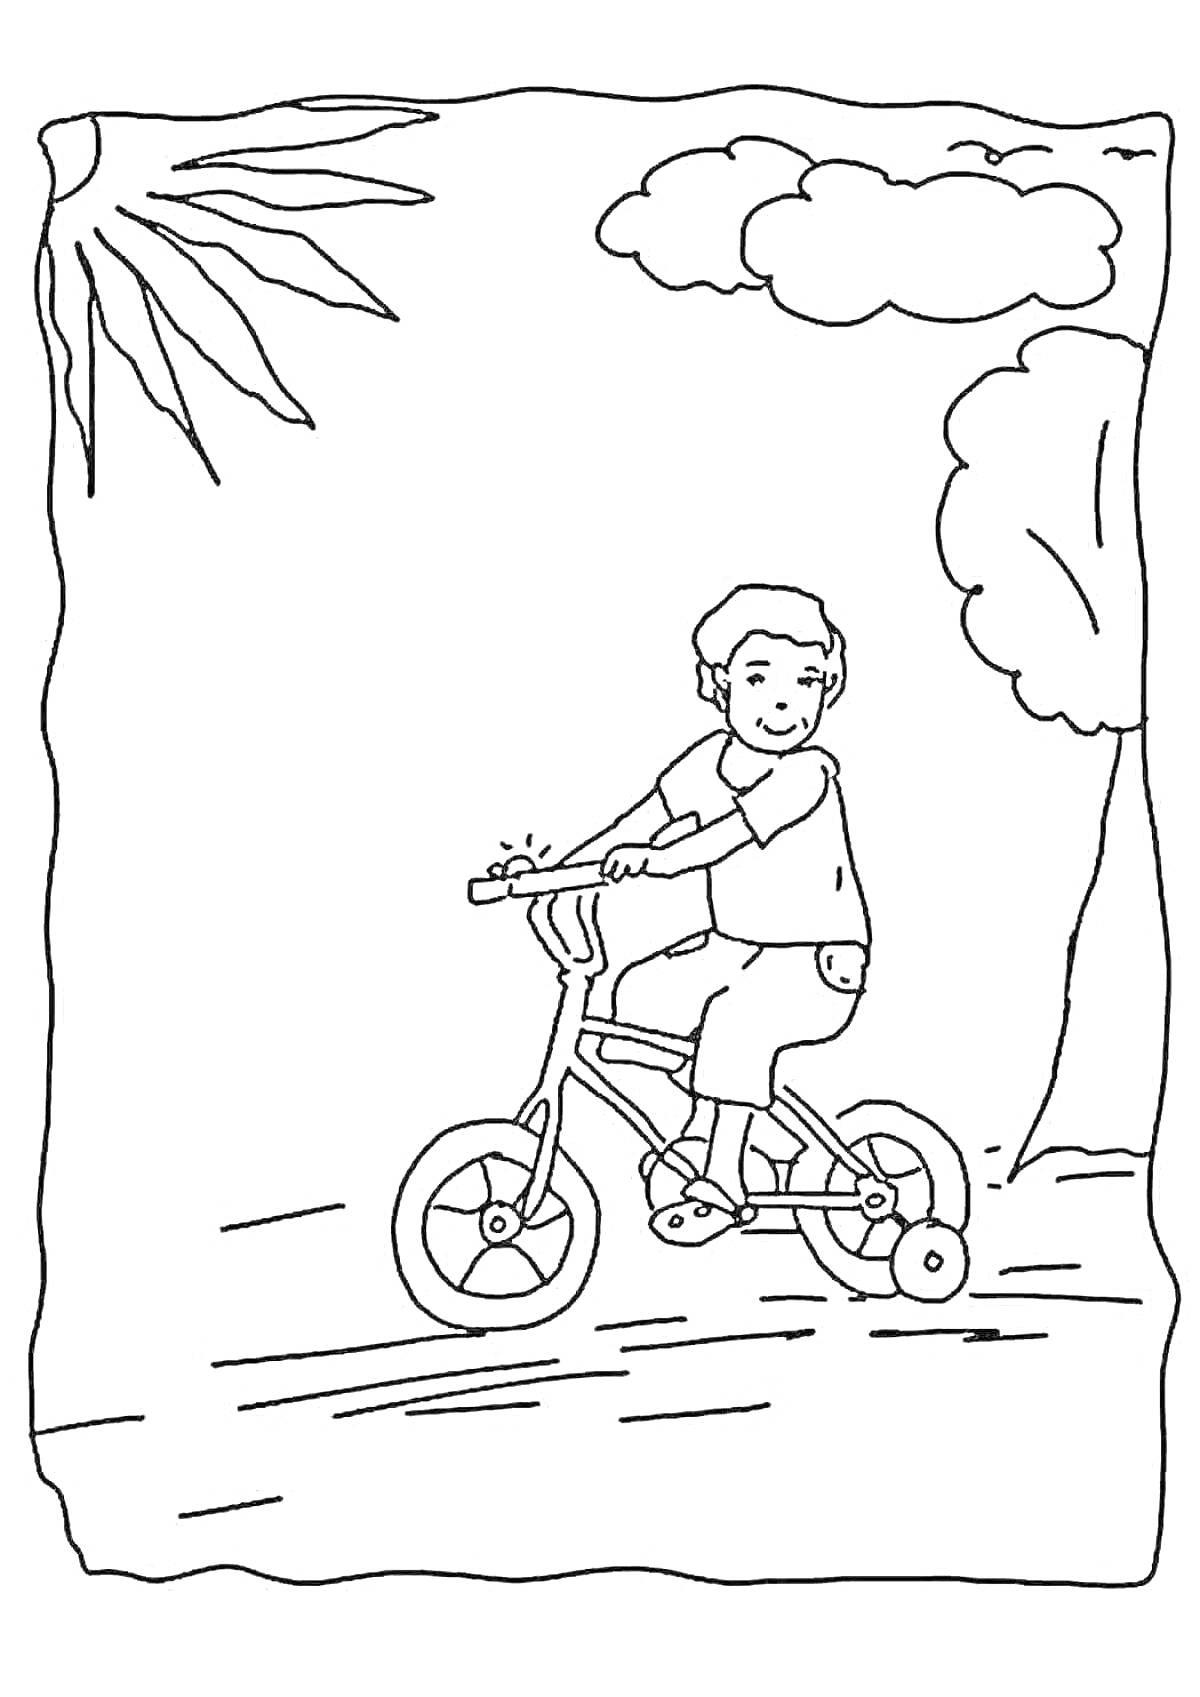 Раскраска Мальчик на велосипеде, дерево, солнце, облако